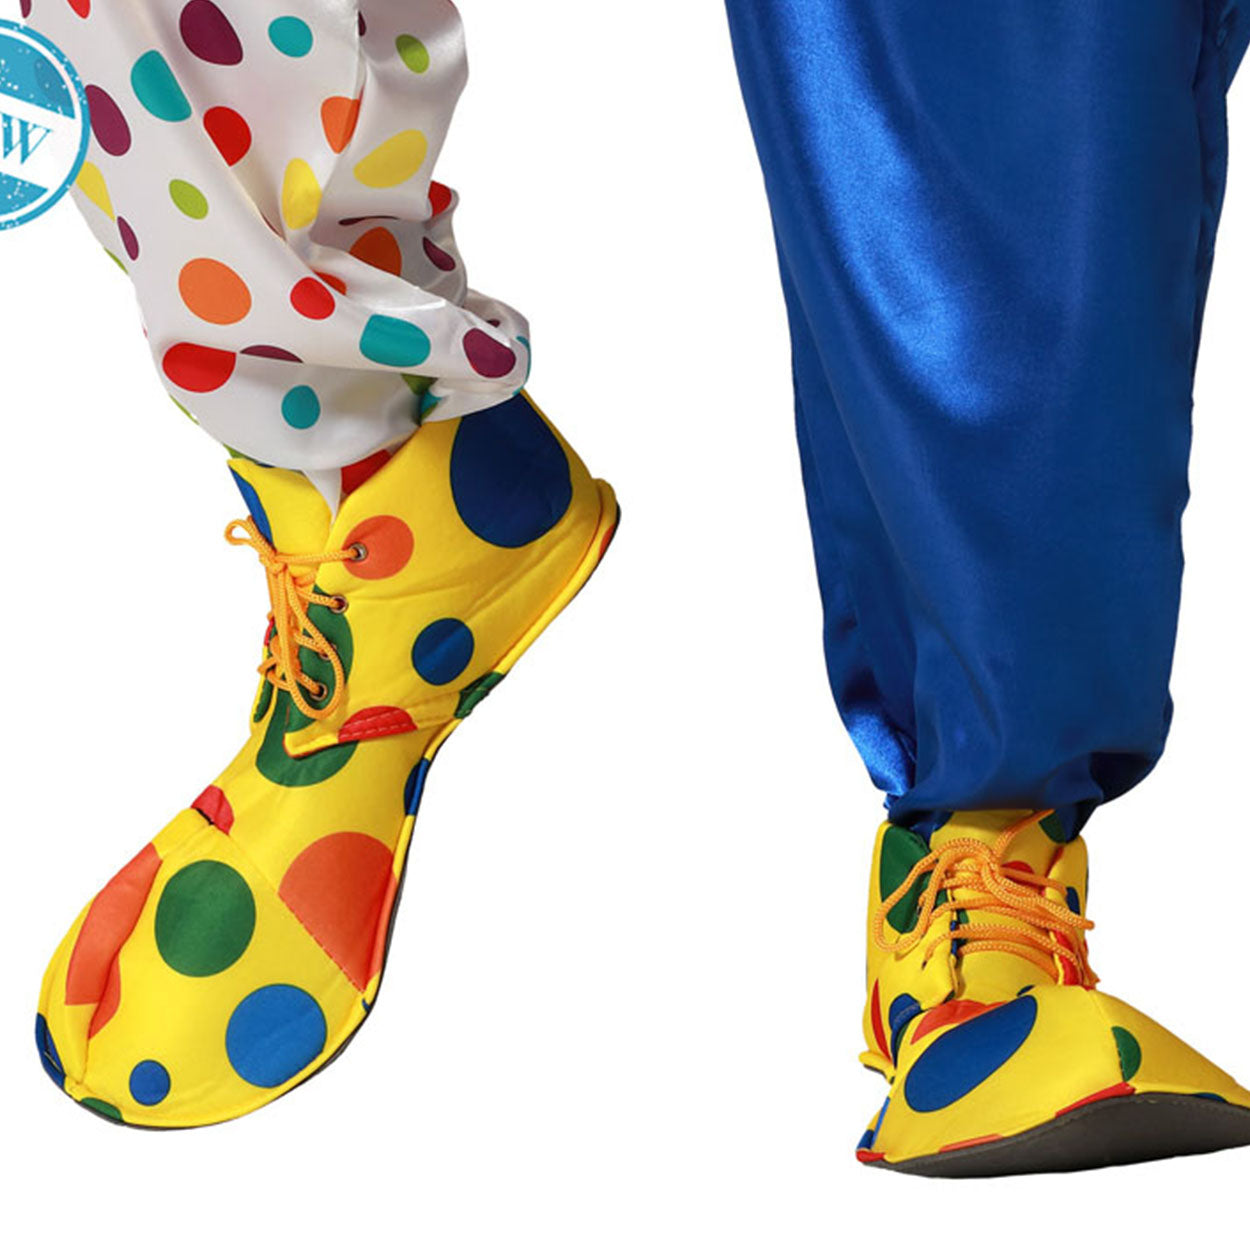 Scarpa travestimento clown pagliaccio gialla con pois cm 26